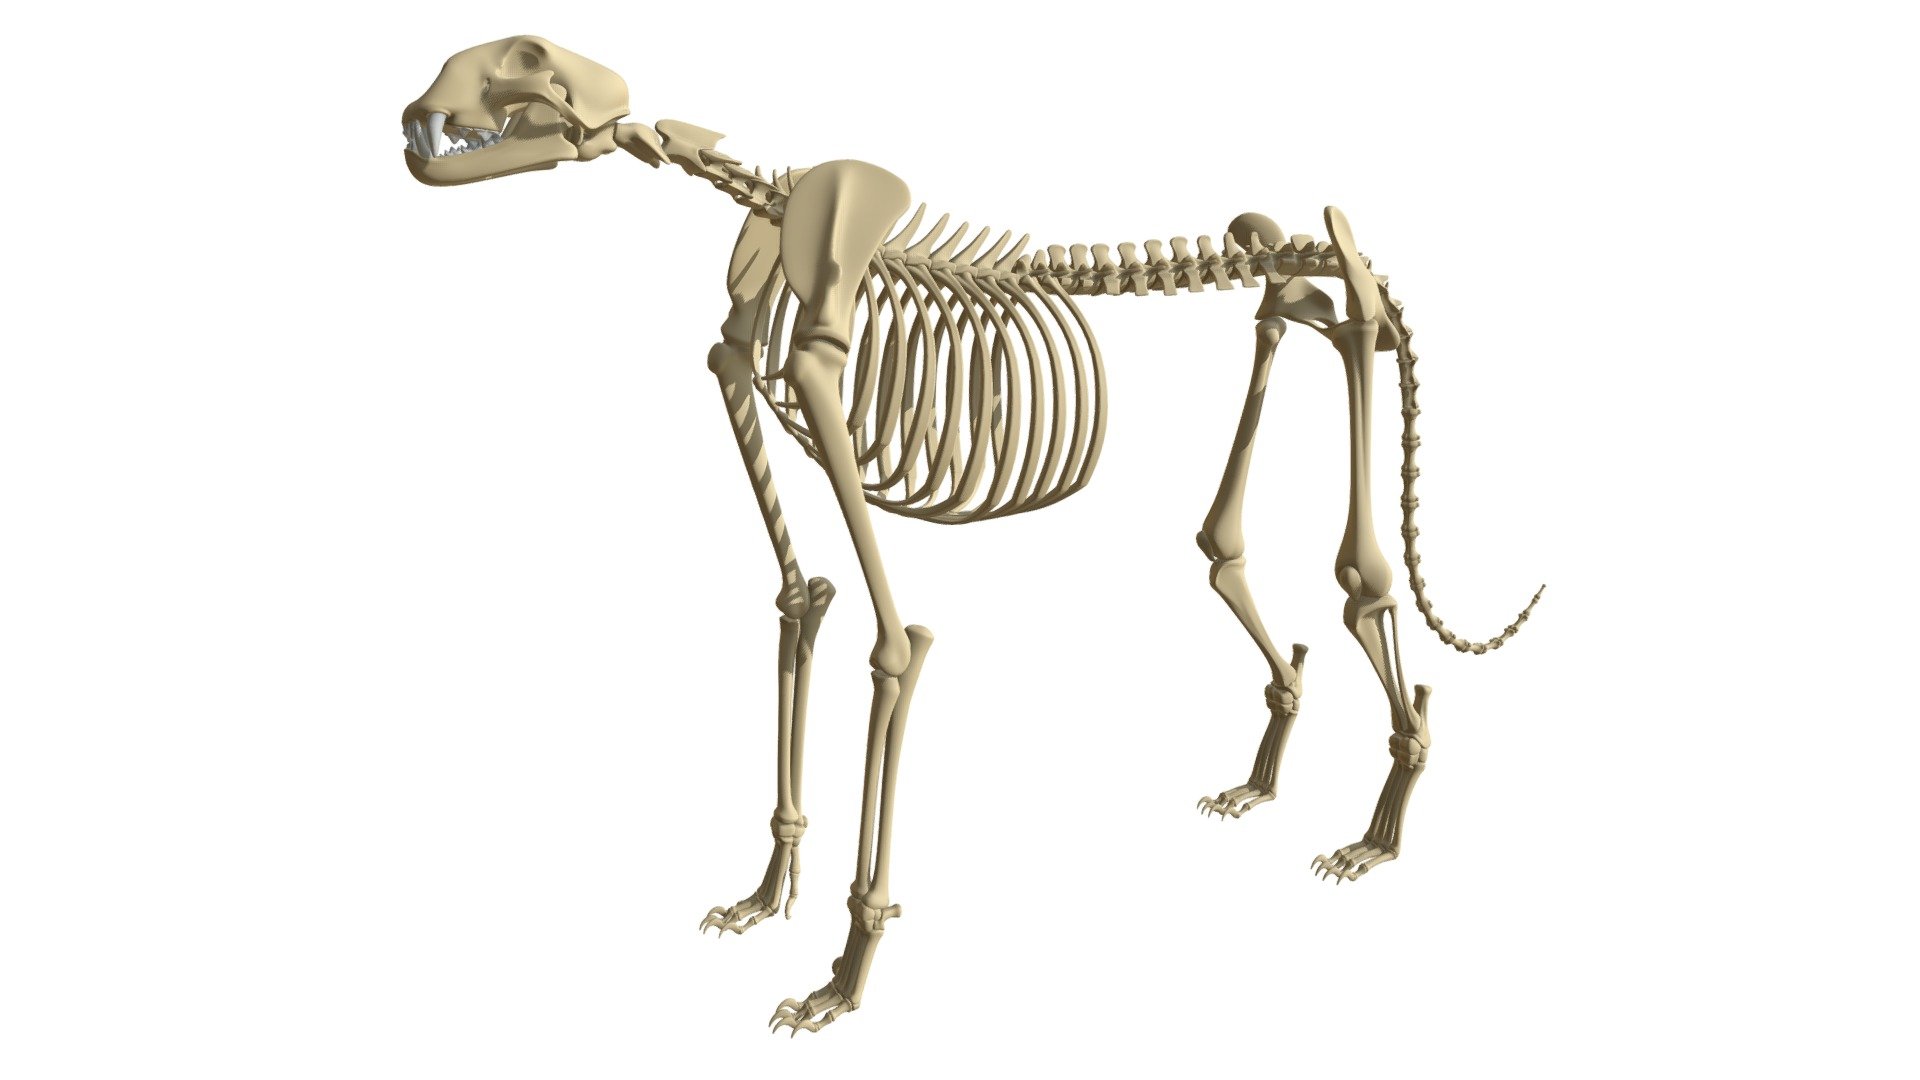 High quality 3d model of cheetah skeleton 3d model